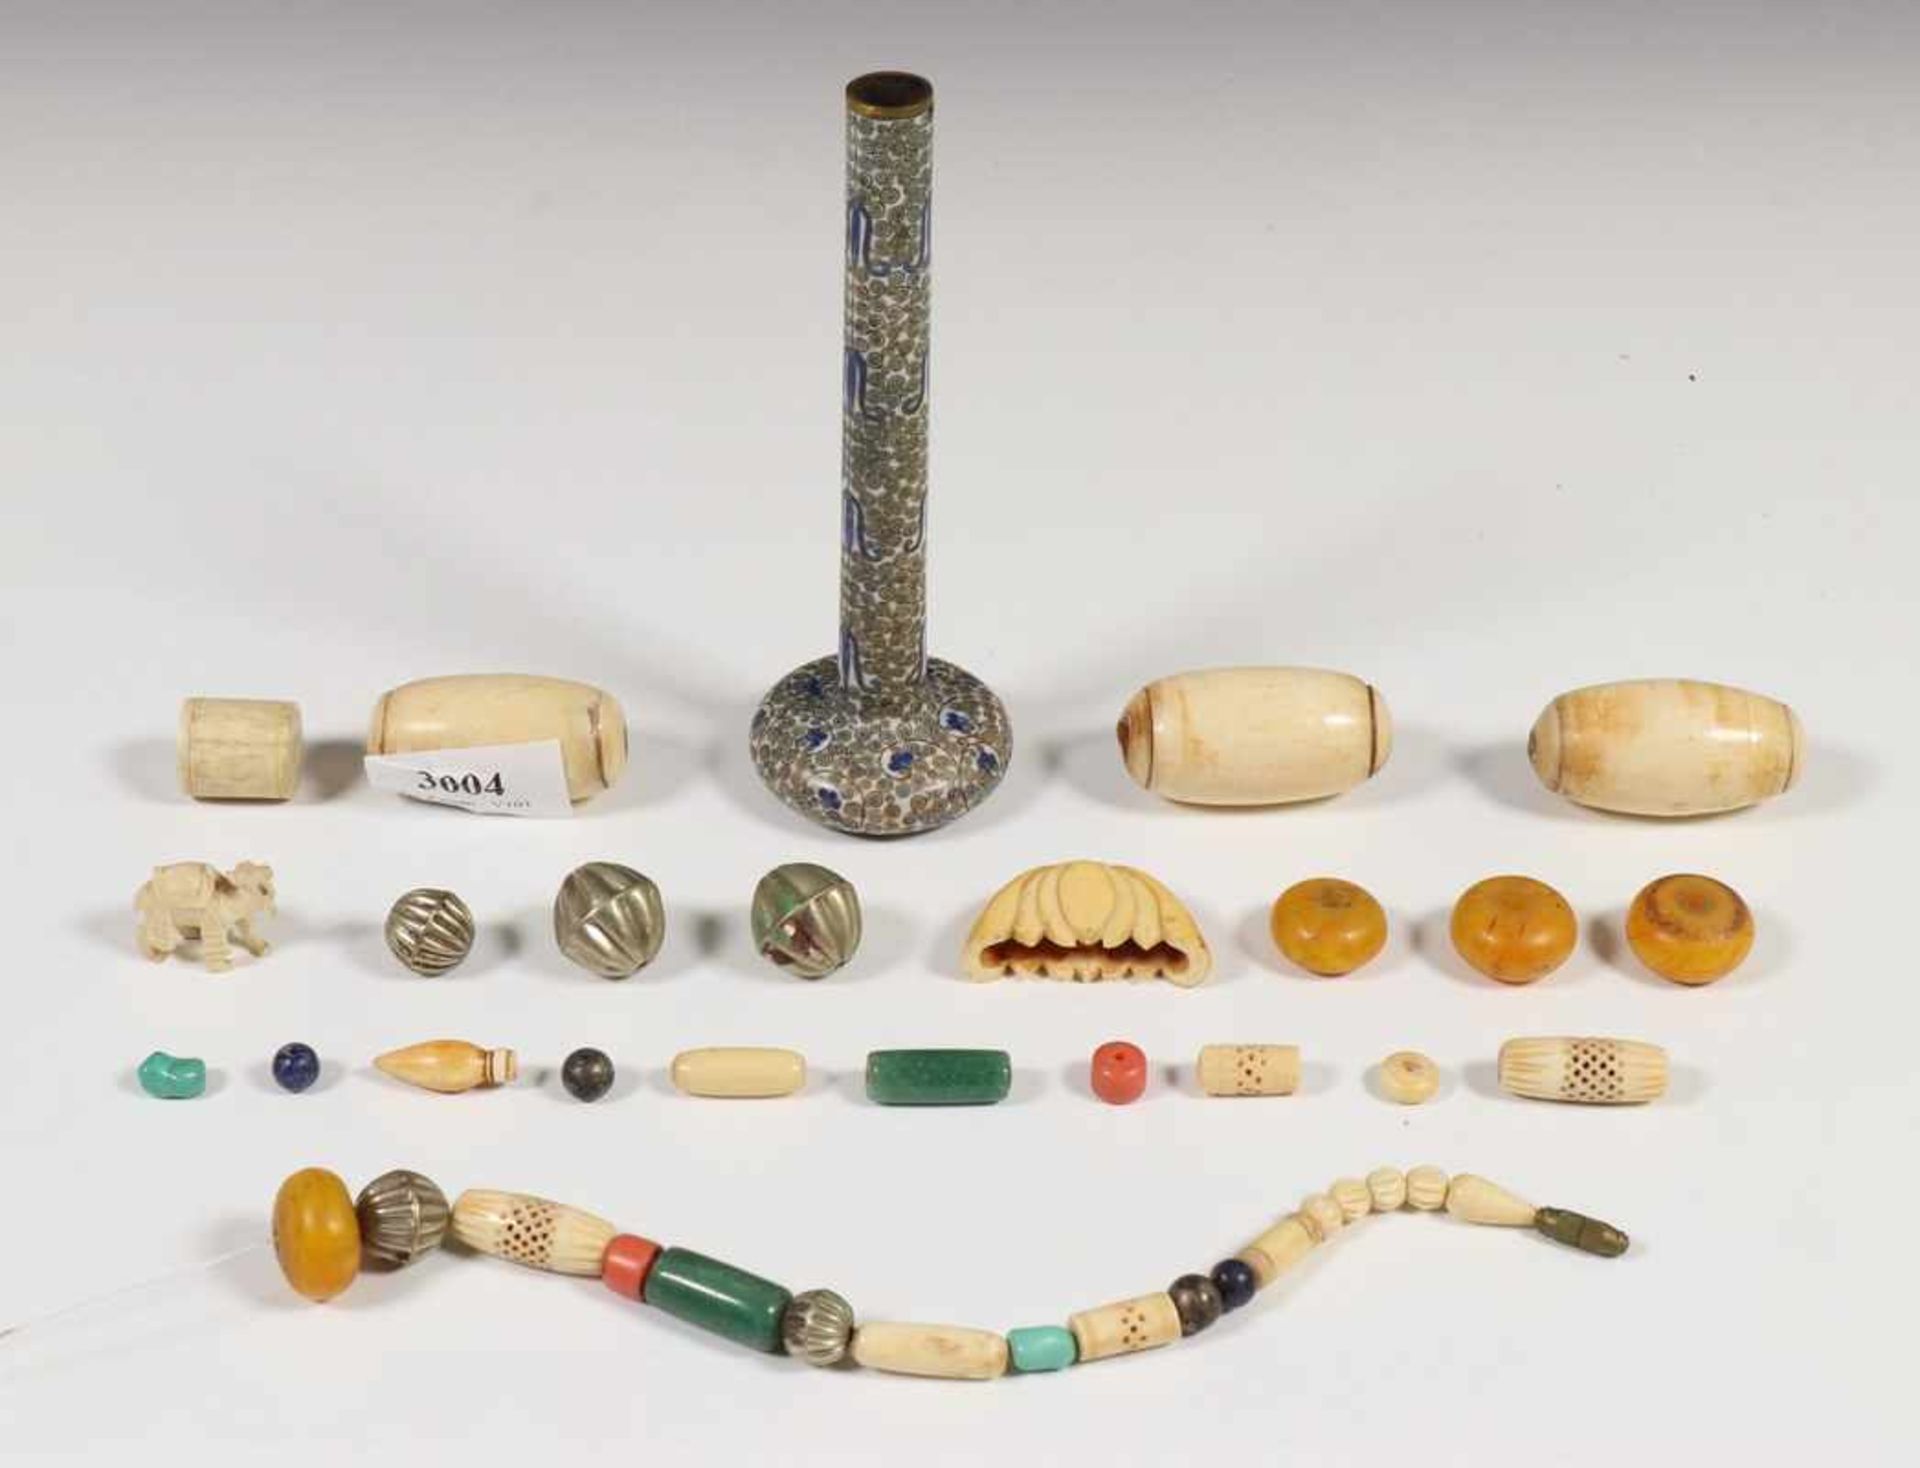 China, cloisonné wandelstokknop, ca. 1900 en diverse oosterse kralen,deels ivoor, o.a. in vorm van